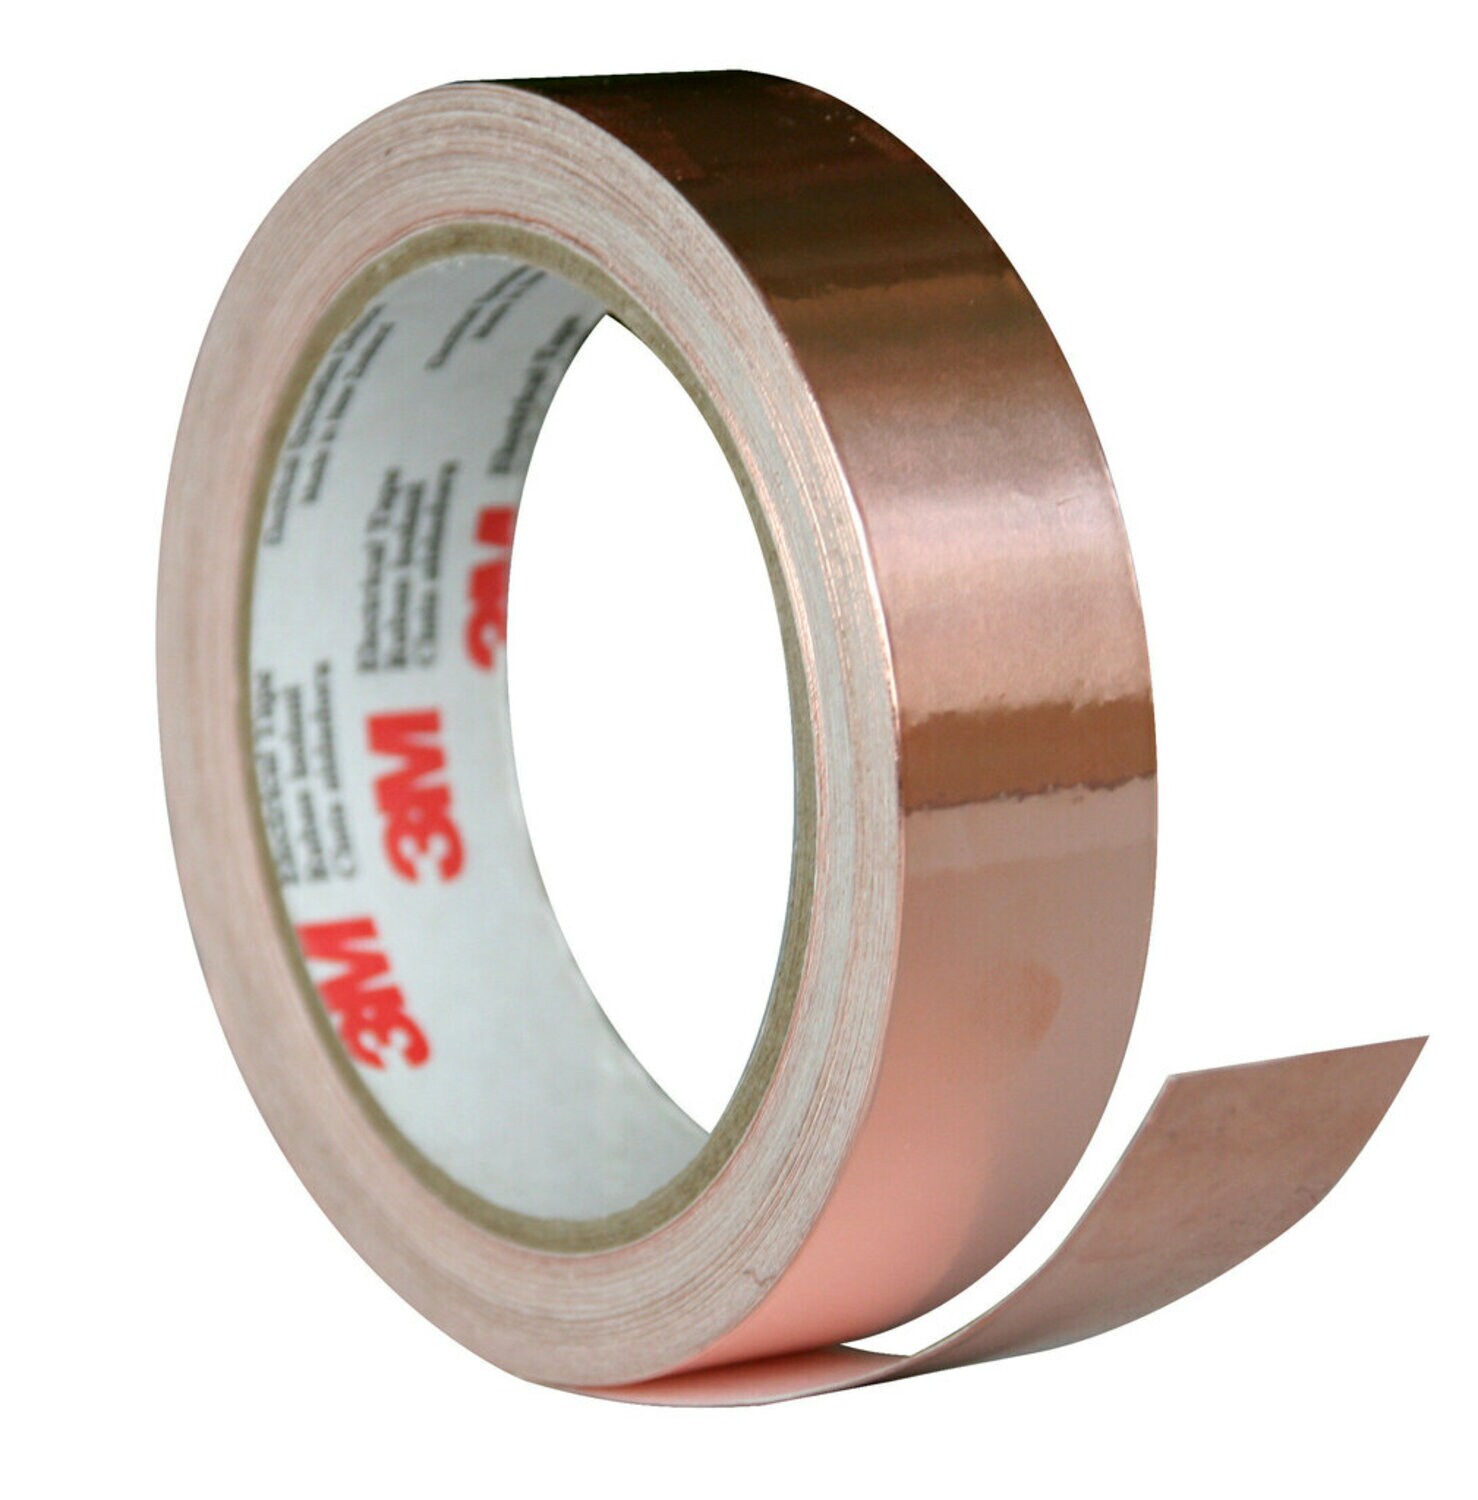 7010351109 - 3M EMI Copper Foil Shielding Tape 1181, 3 3/4 in x 60 yd, 3 Rolls/Case